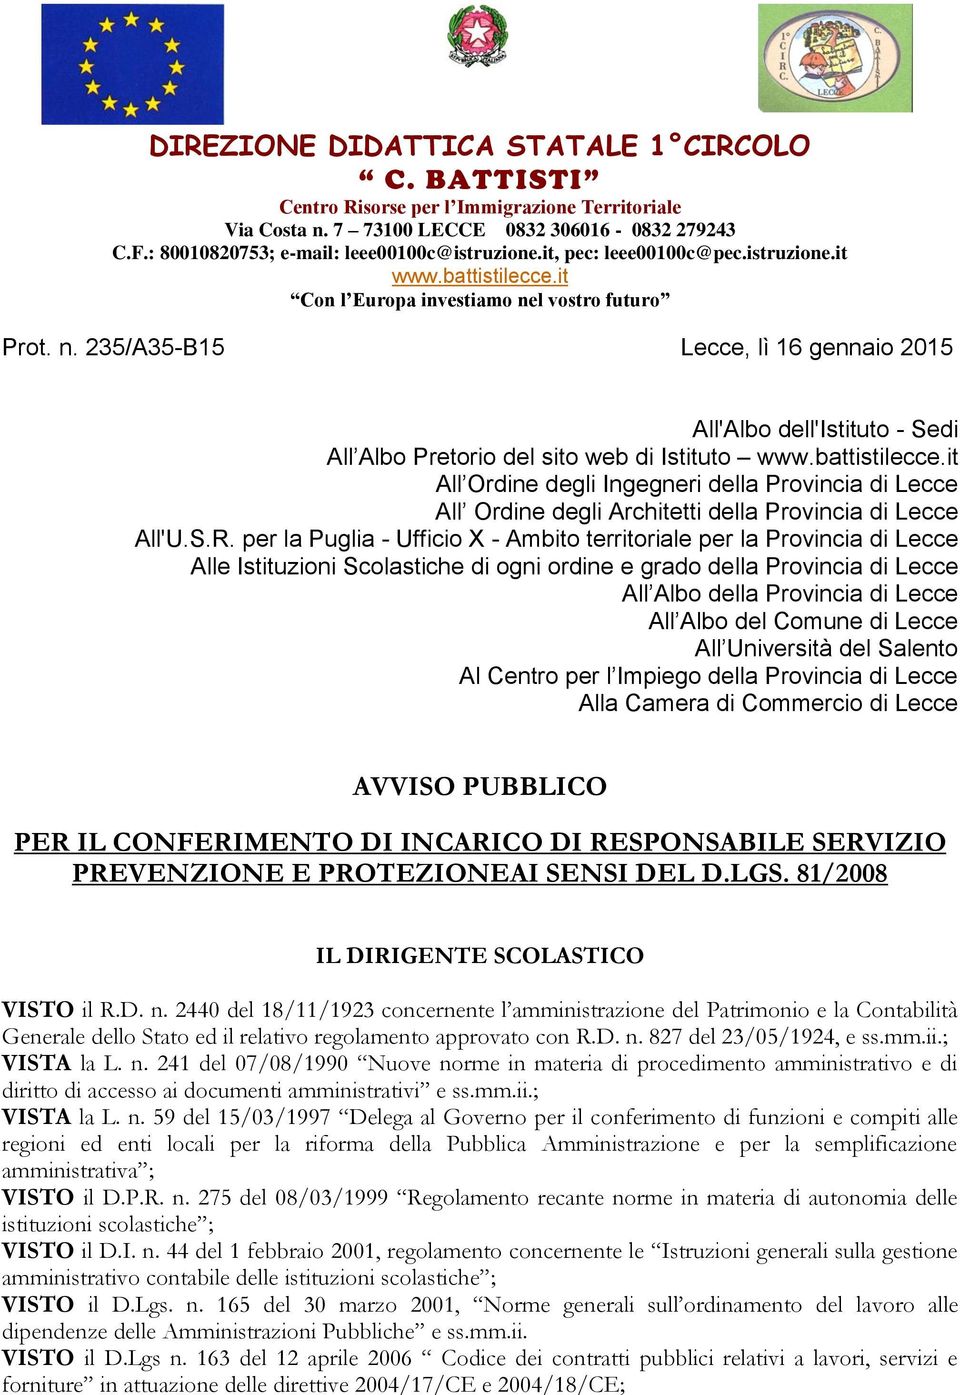 l vostro futuro Prot. n. 235/A35-B15 Lecce, lì 16 gennaio 2015 All'Albo dell'istituto - Sedi All Albo Pretorio del sito web di Istituto www.battistilecce.